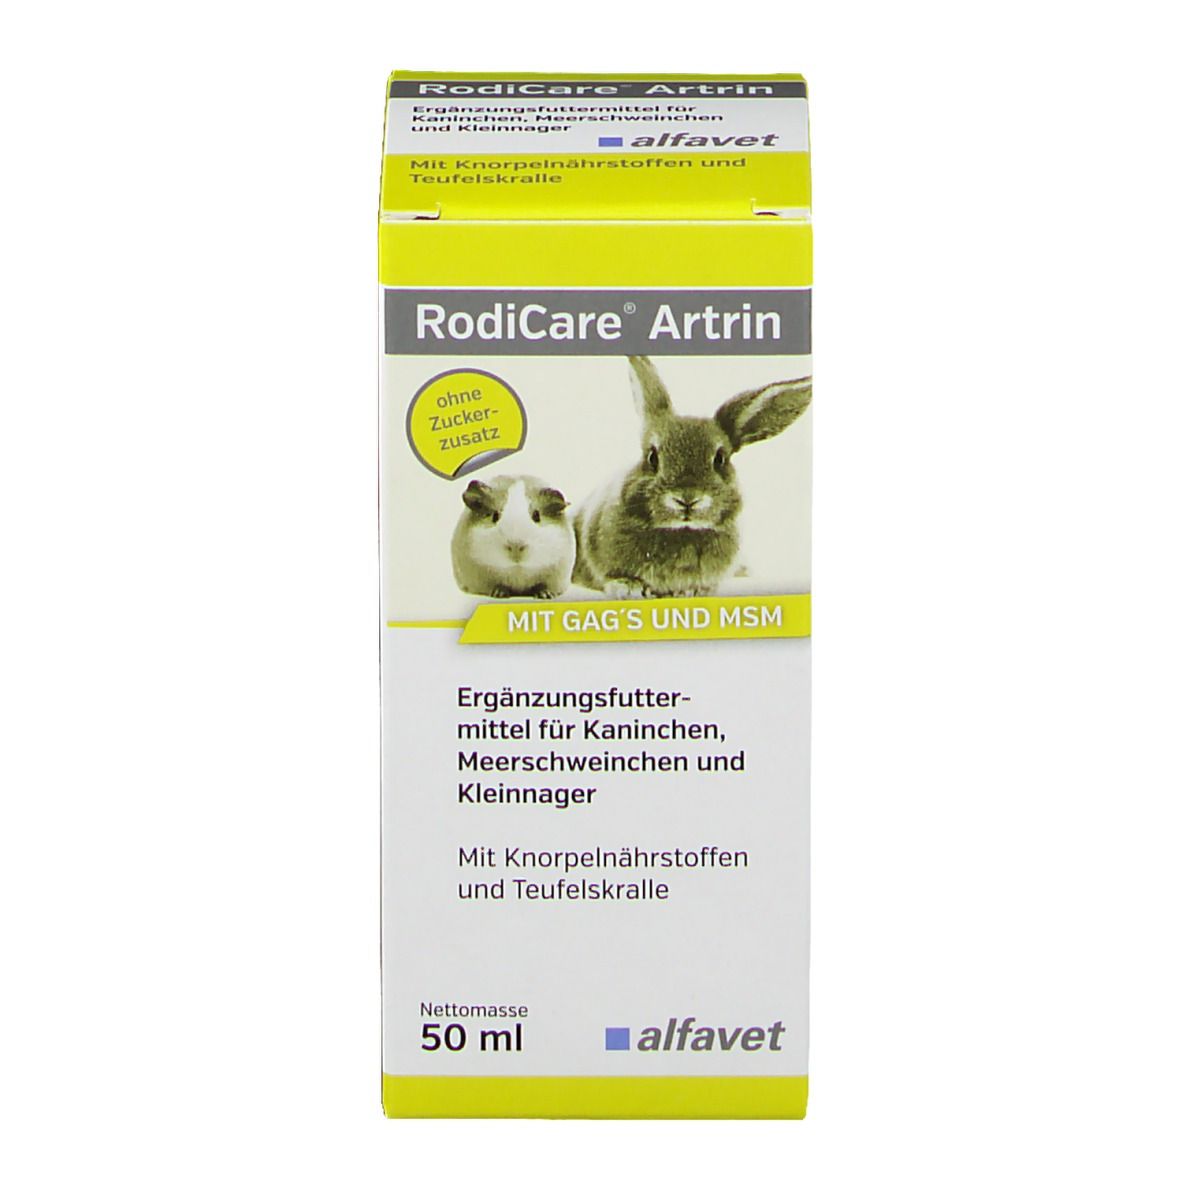 RodiCare® Artrin für Kaninchen, Meerschweinchen und Kleinnager